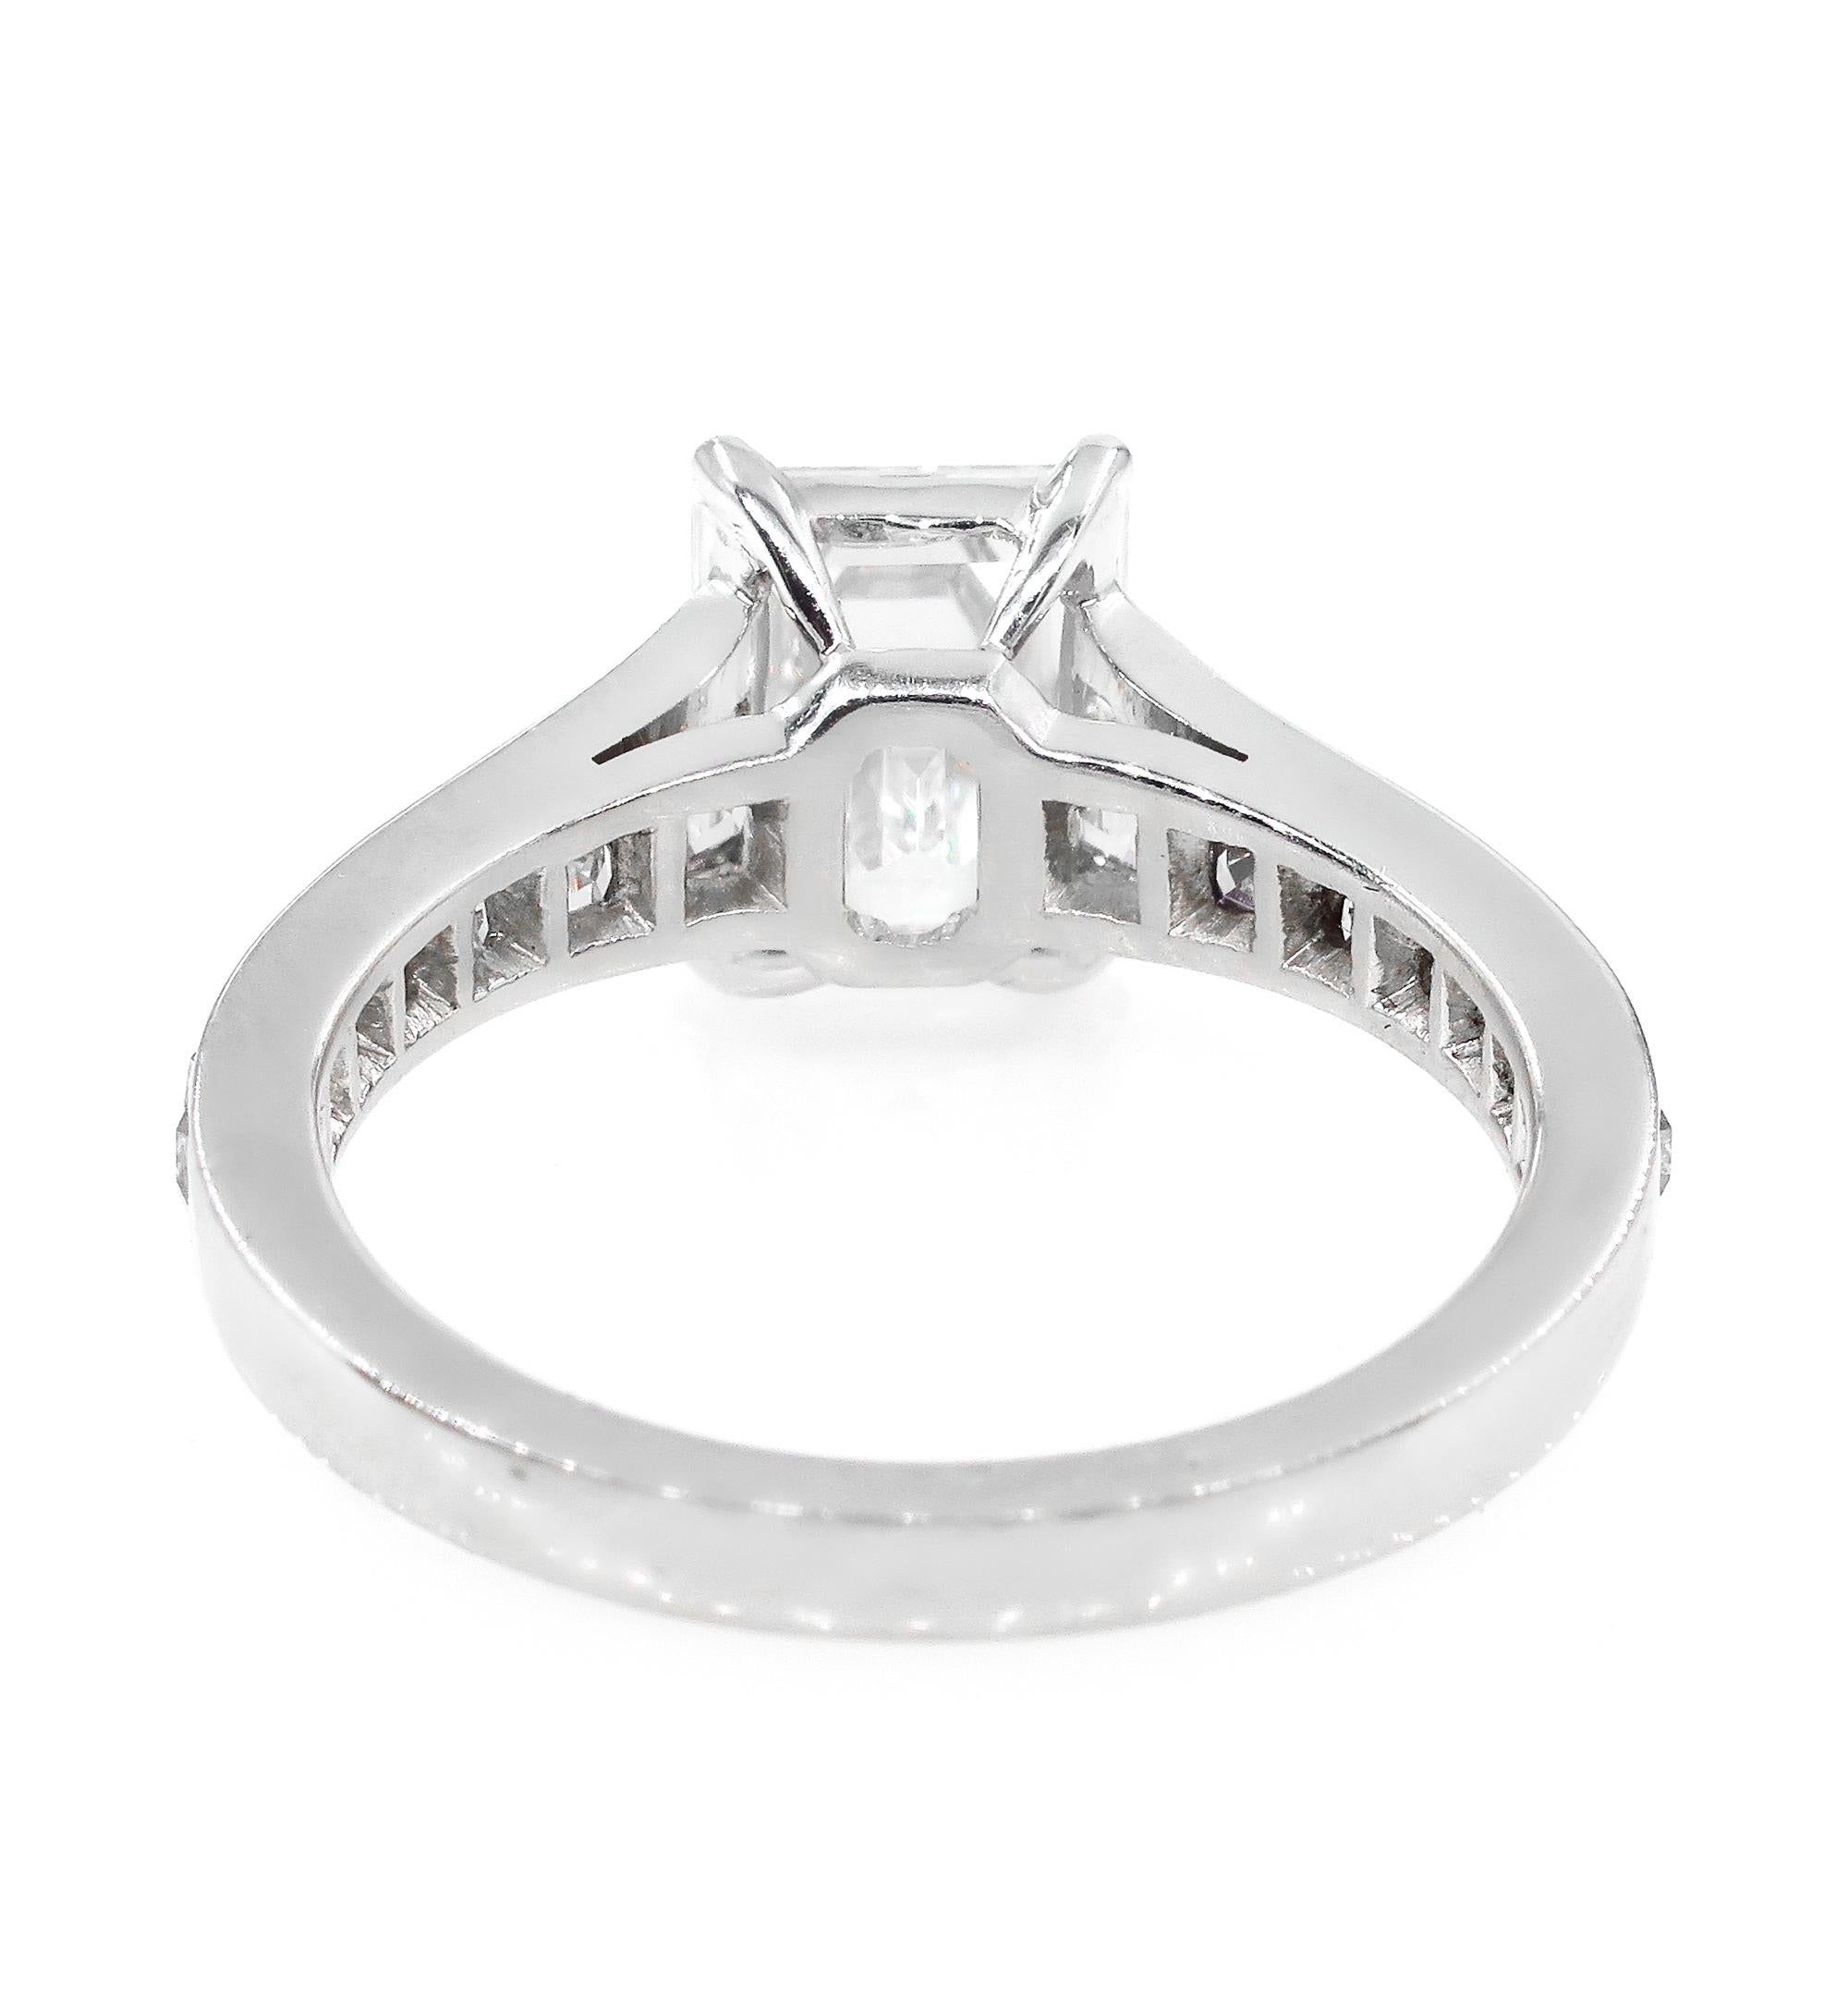 Emerald Cut GIA 3.74 Carat Emerald Step Cut Carre French Cut Diamond Platinum Ring